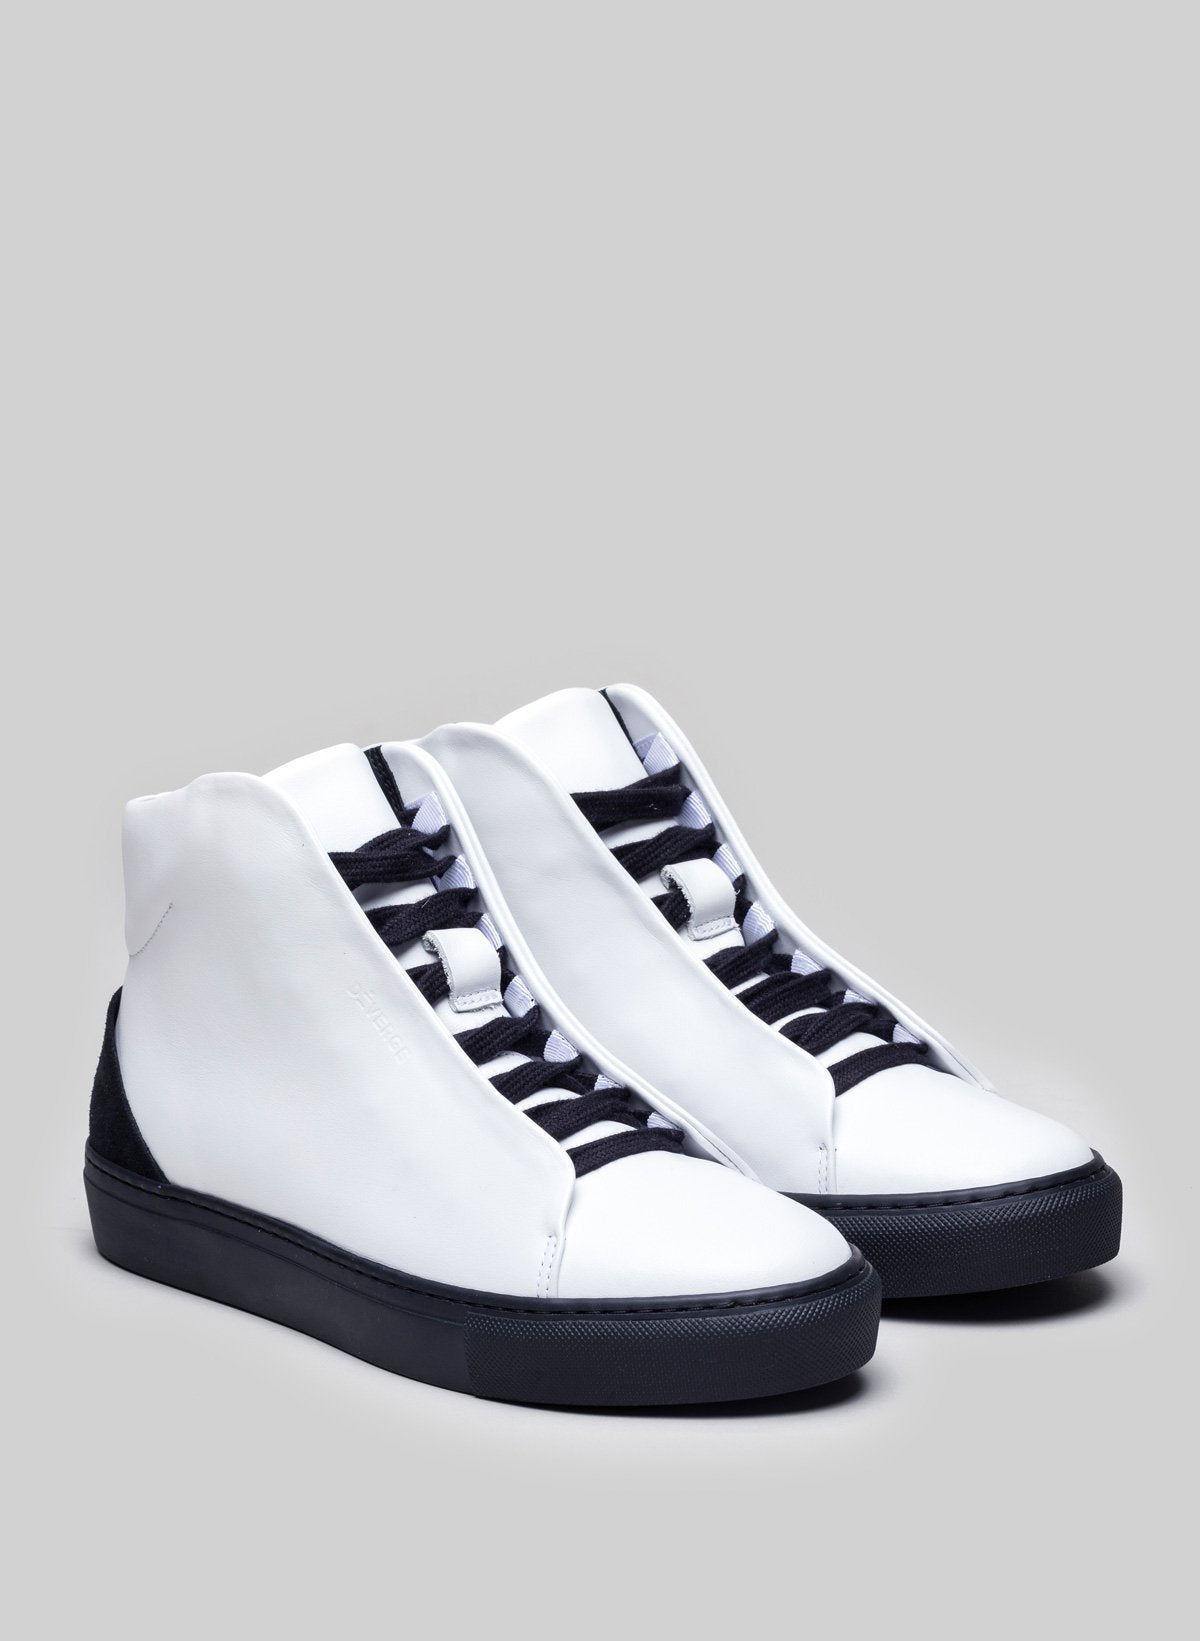 Weiße High-Top-Schuhe sneakers mit schwarzen Sohlen und Schnürsenkeln, Maßschuhe von Diverge.